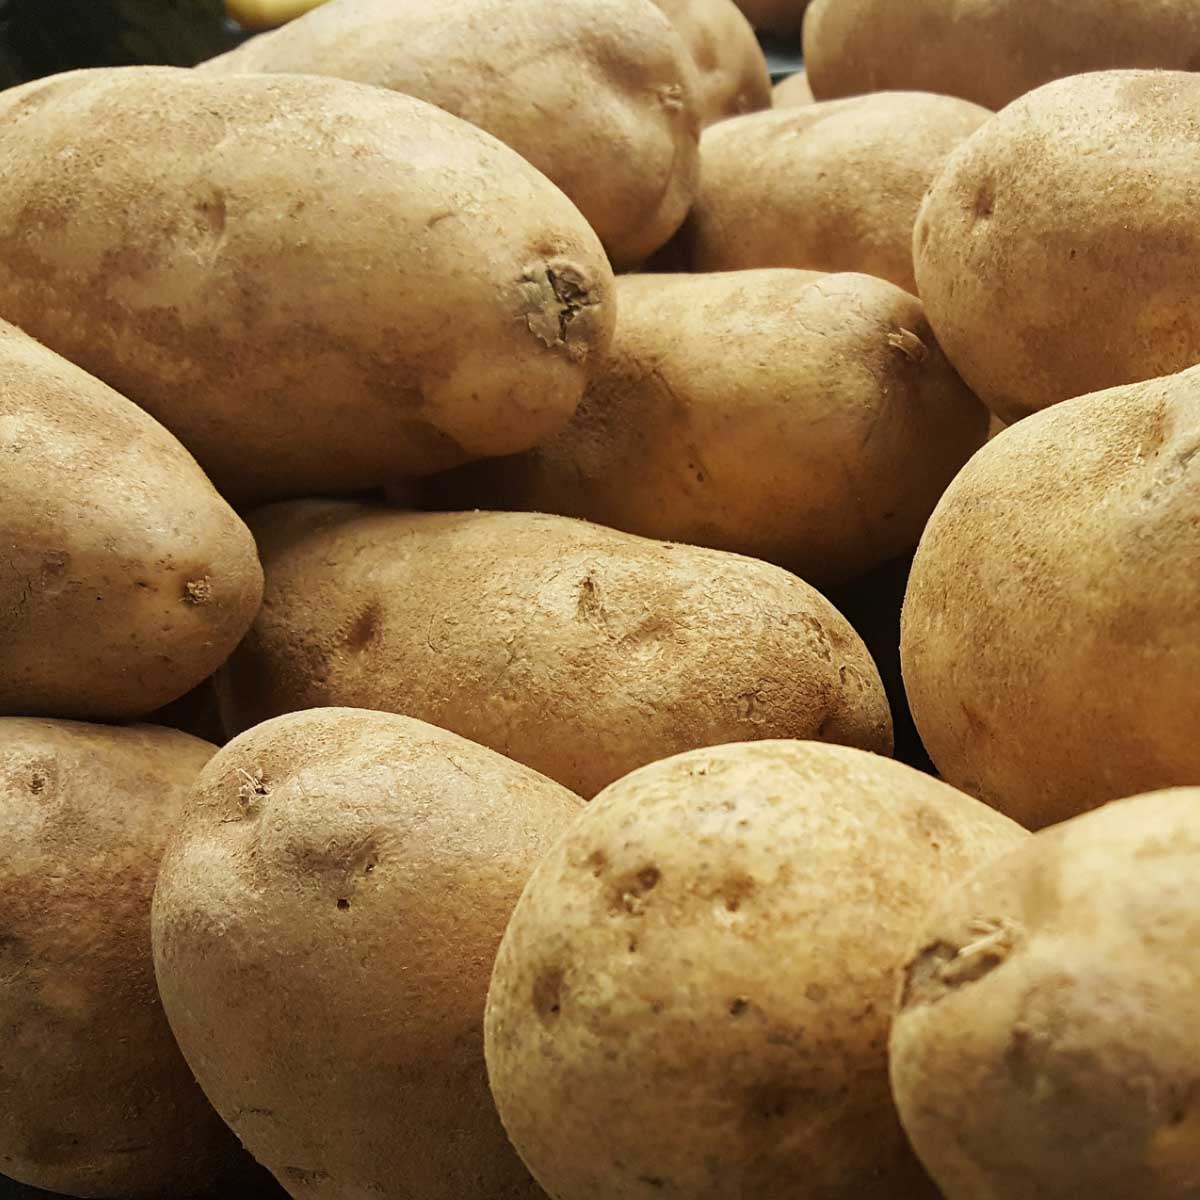 closeup of russet potatoes.